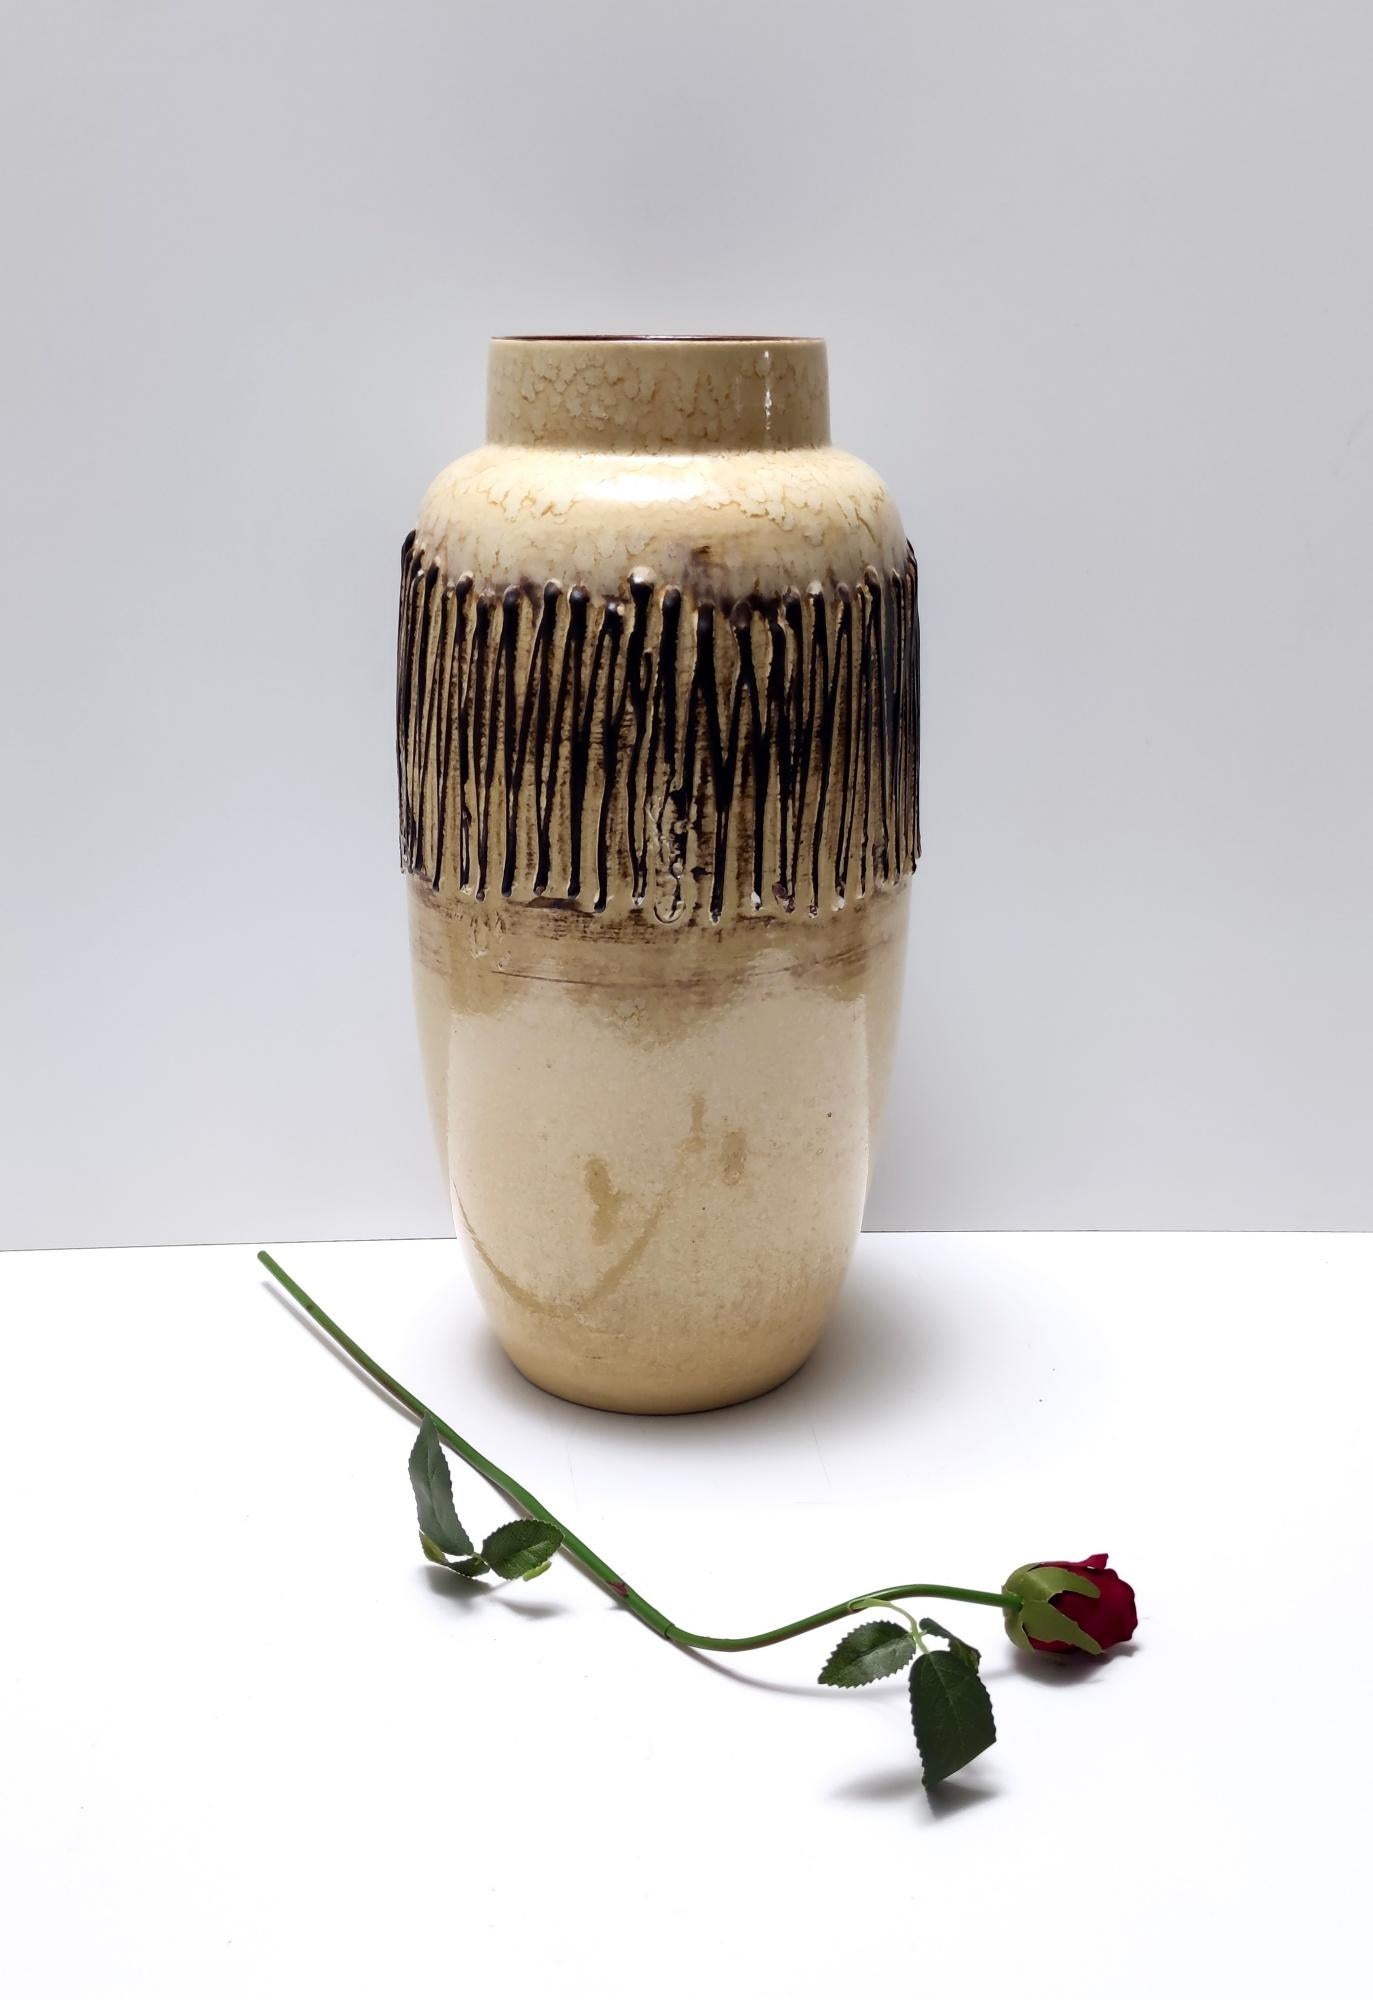 Fabriqué en Allemagne, années 1970. 
Ce vase fait main est fabriqué en céramique émaillée.
Il s'agit d'une pièce vintage, qui peut donc présenter de légères traces d'utilisation, mais qui peut être considérée comme étant en très bon état d'origine